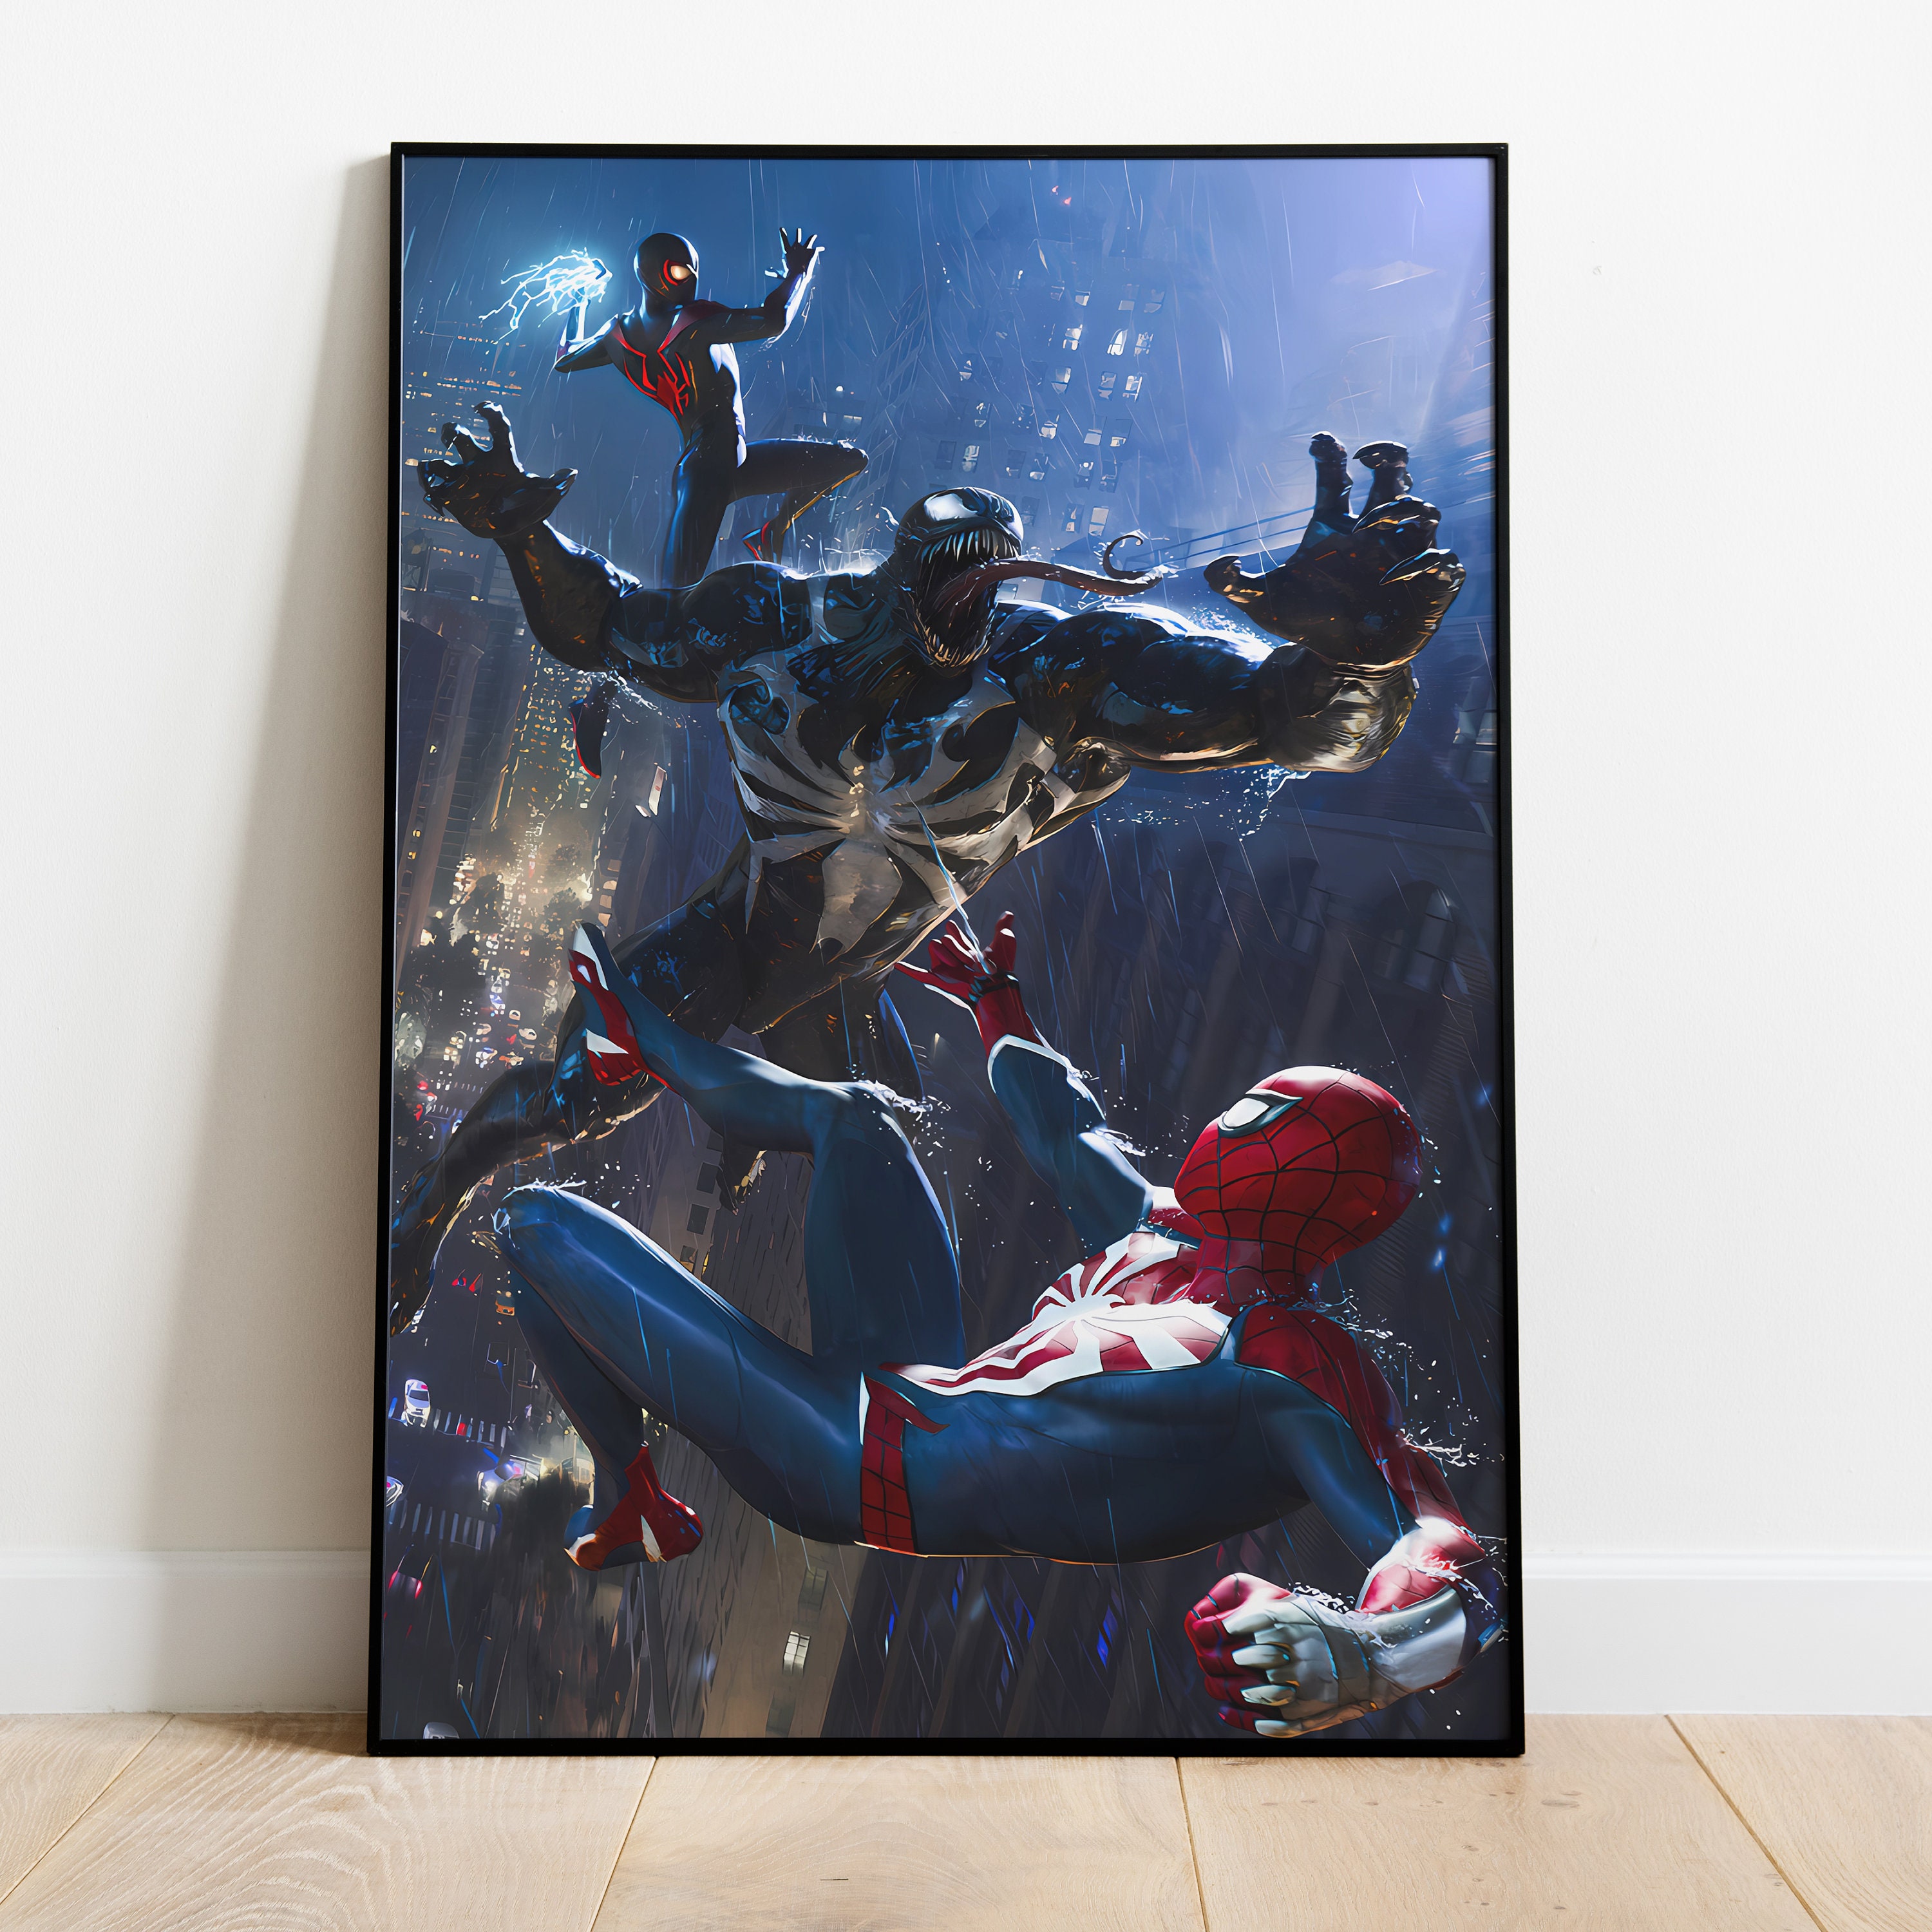 Spider-Man Comic Book Artwork Collage Portrait Tribute Fine Art Mini-Canvas